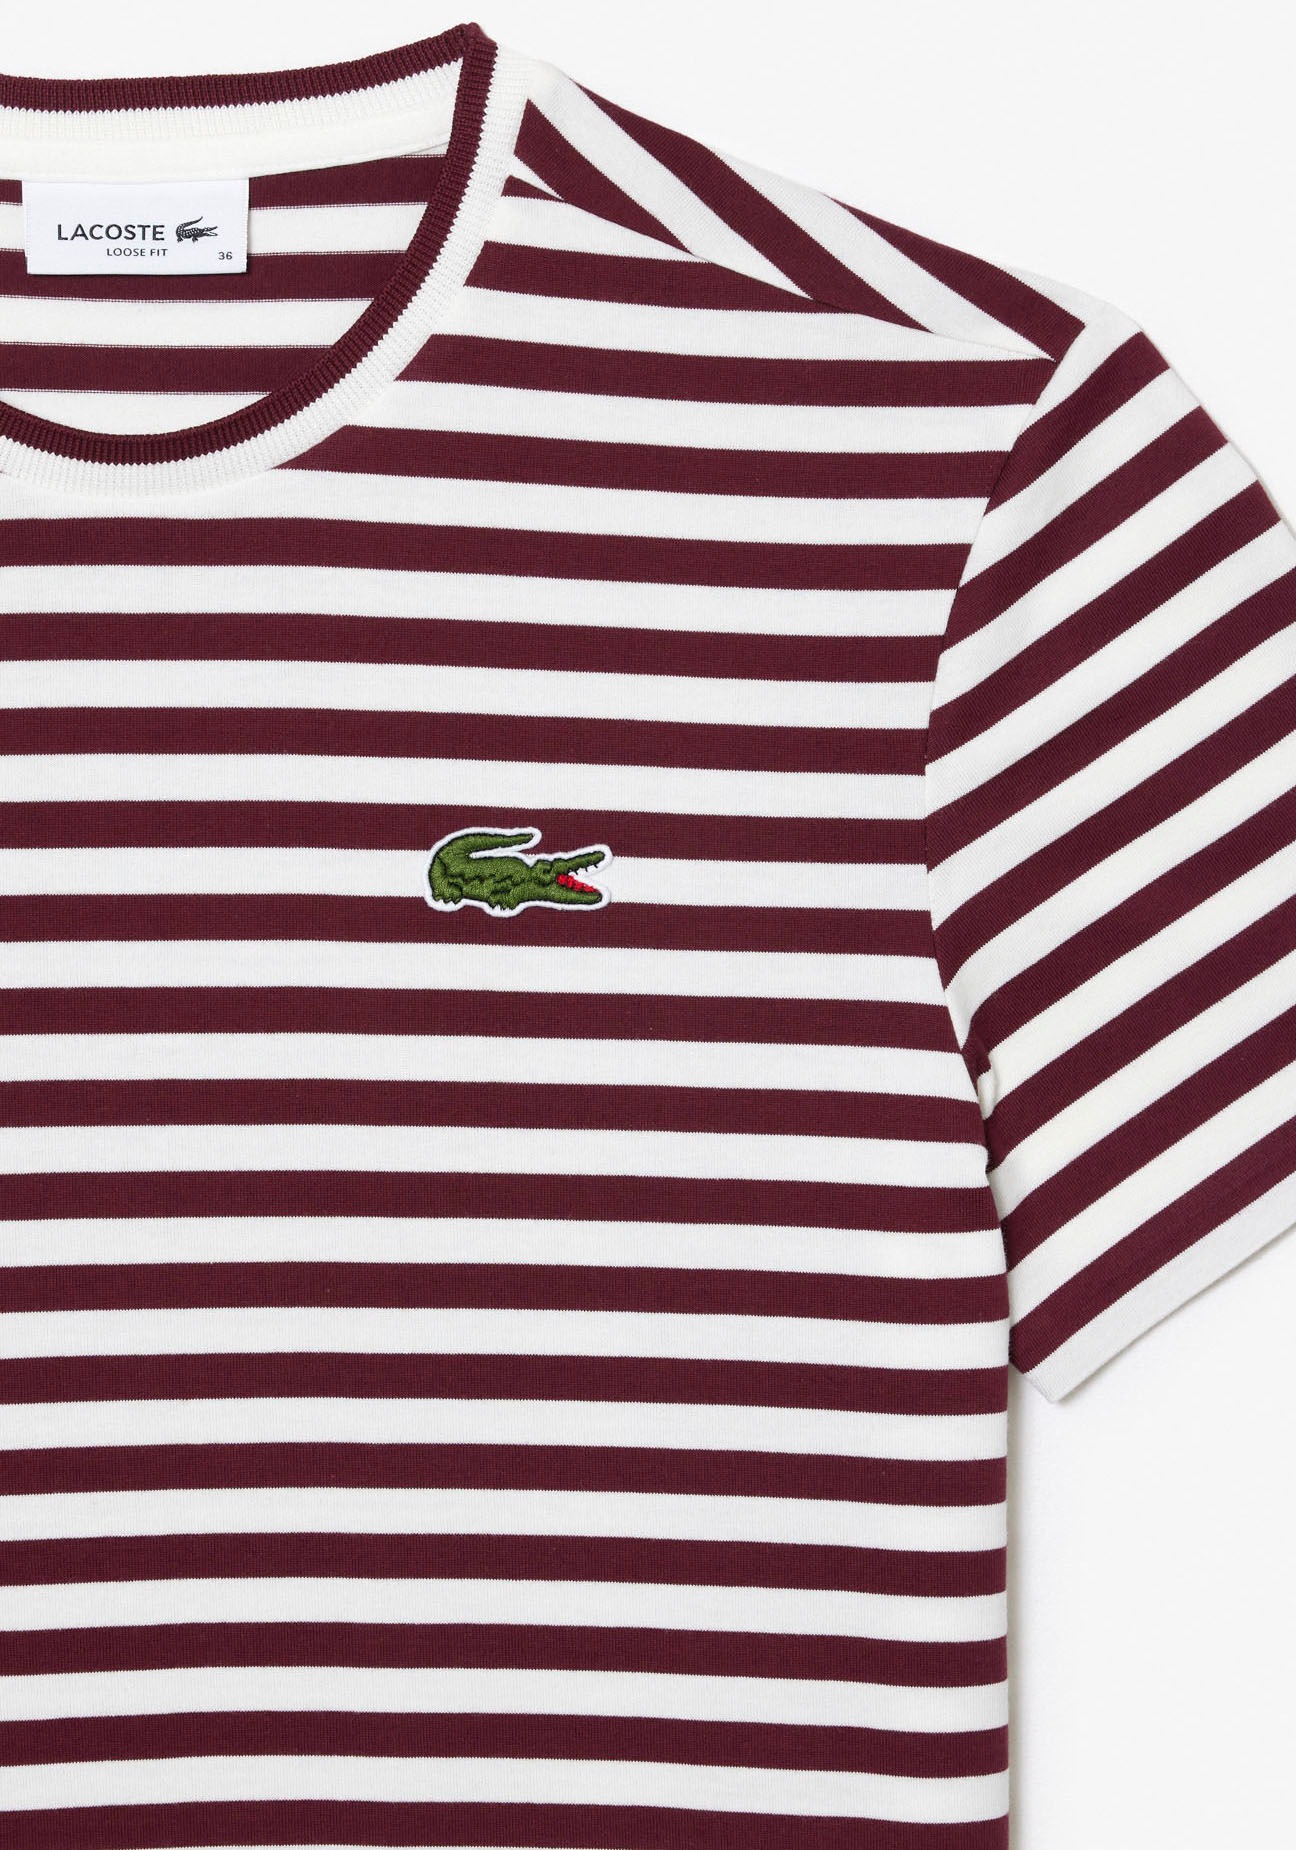 OTTO Stickerei T-Shirt, Lacoste klassischer kaufen bei mit Lacoste-Krokodil